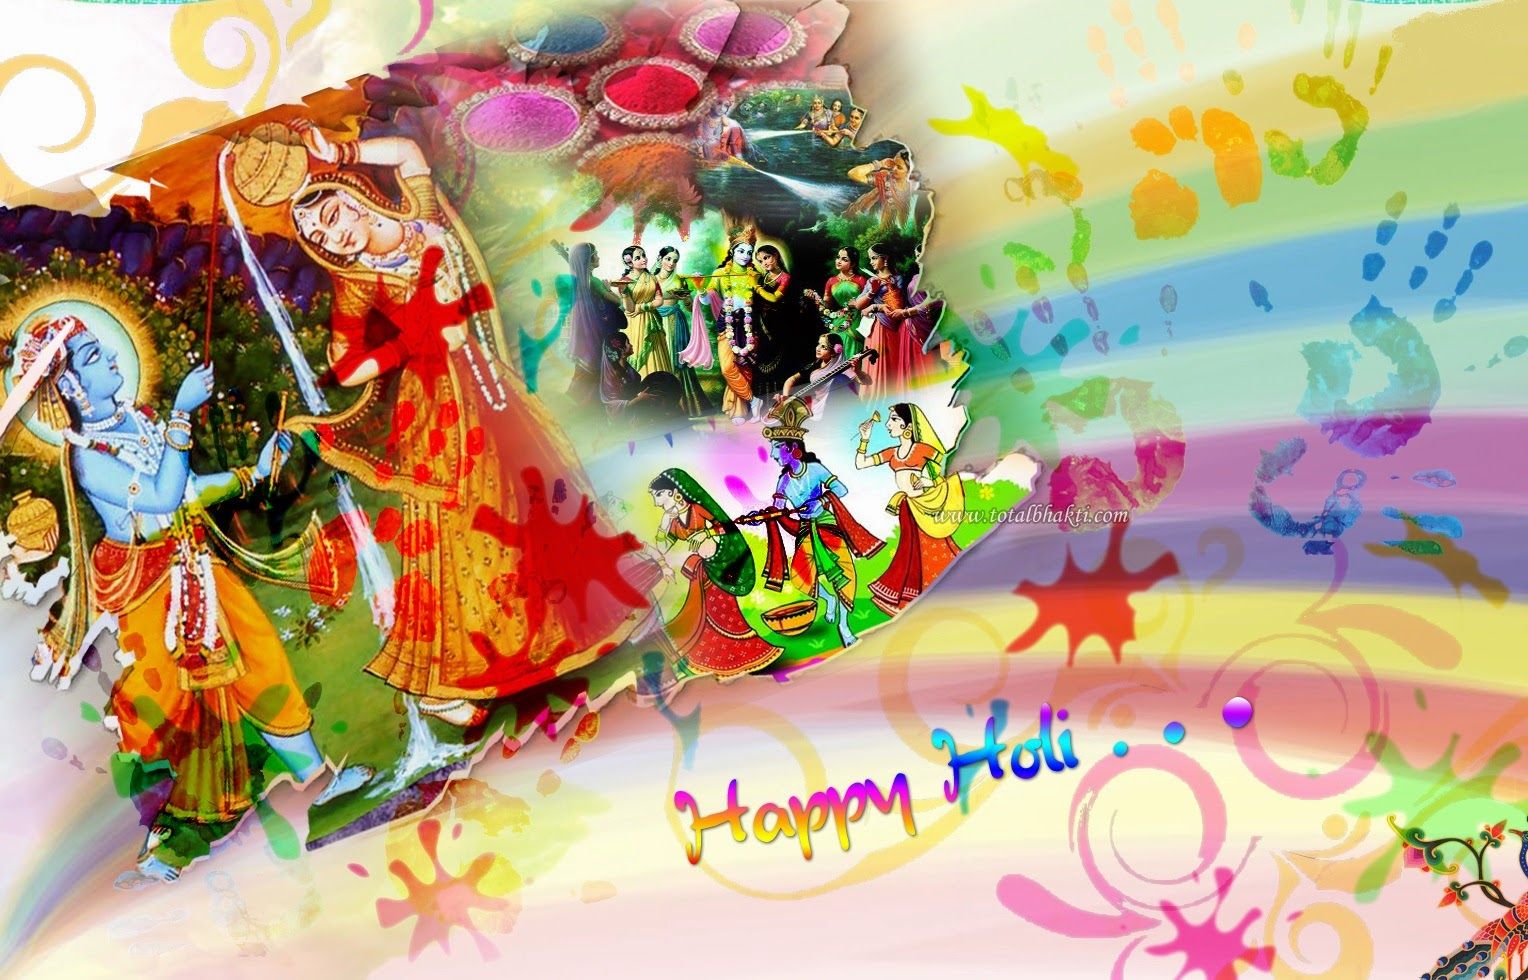 Happy Holi 2020 Wishes, Image, HD Radha Krishna Wallpaper